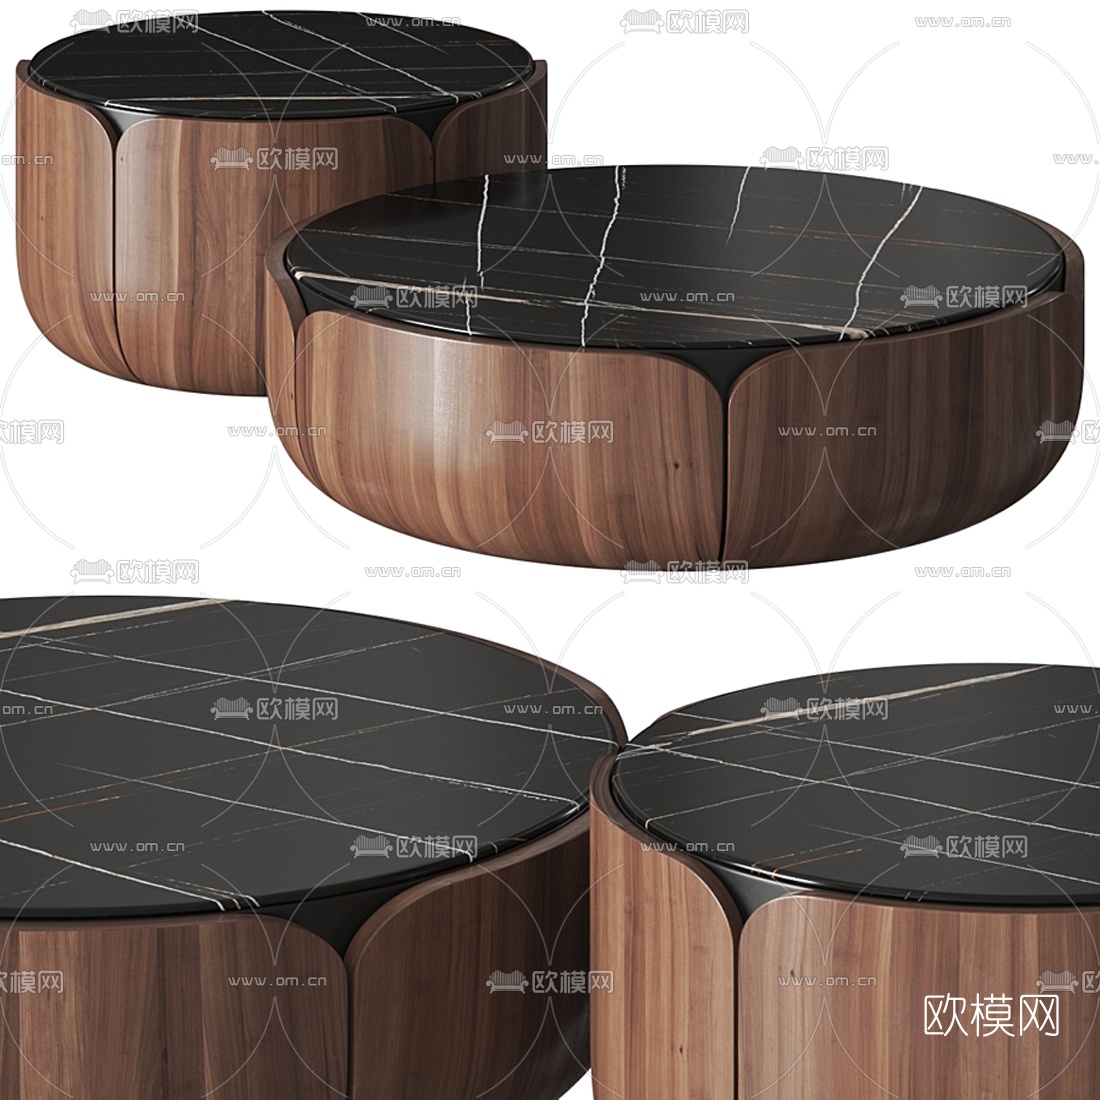 素材主题为现代大理石茶几3d模型,所属分类为桌台,建议使用3dmax2014